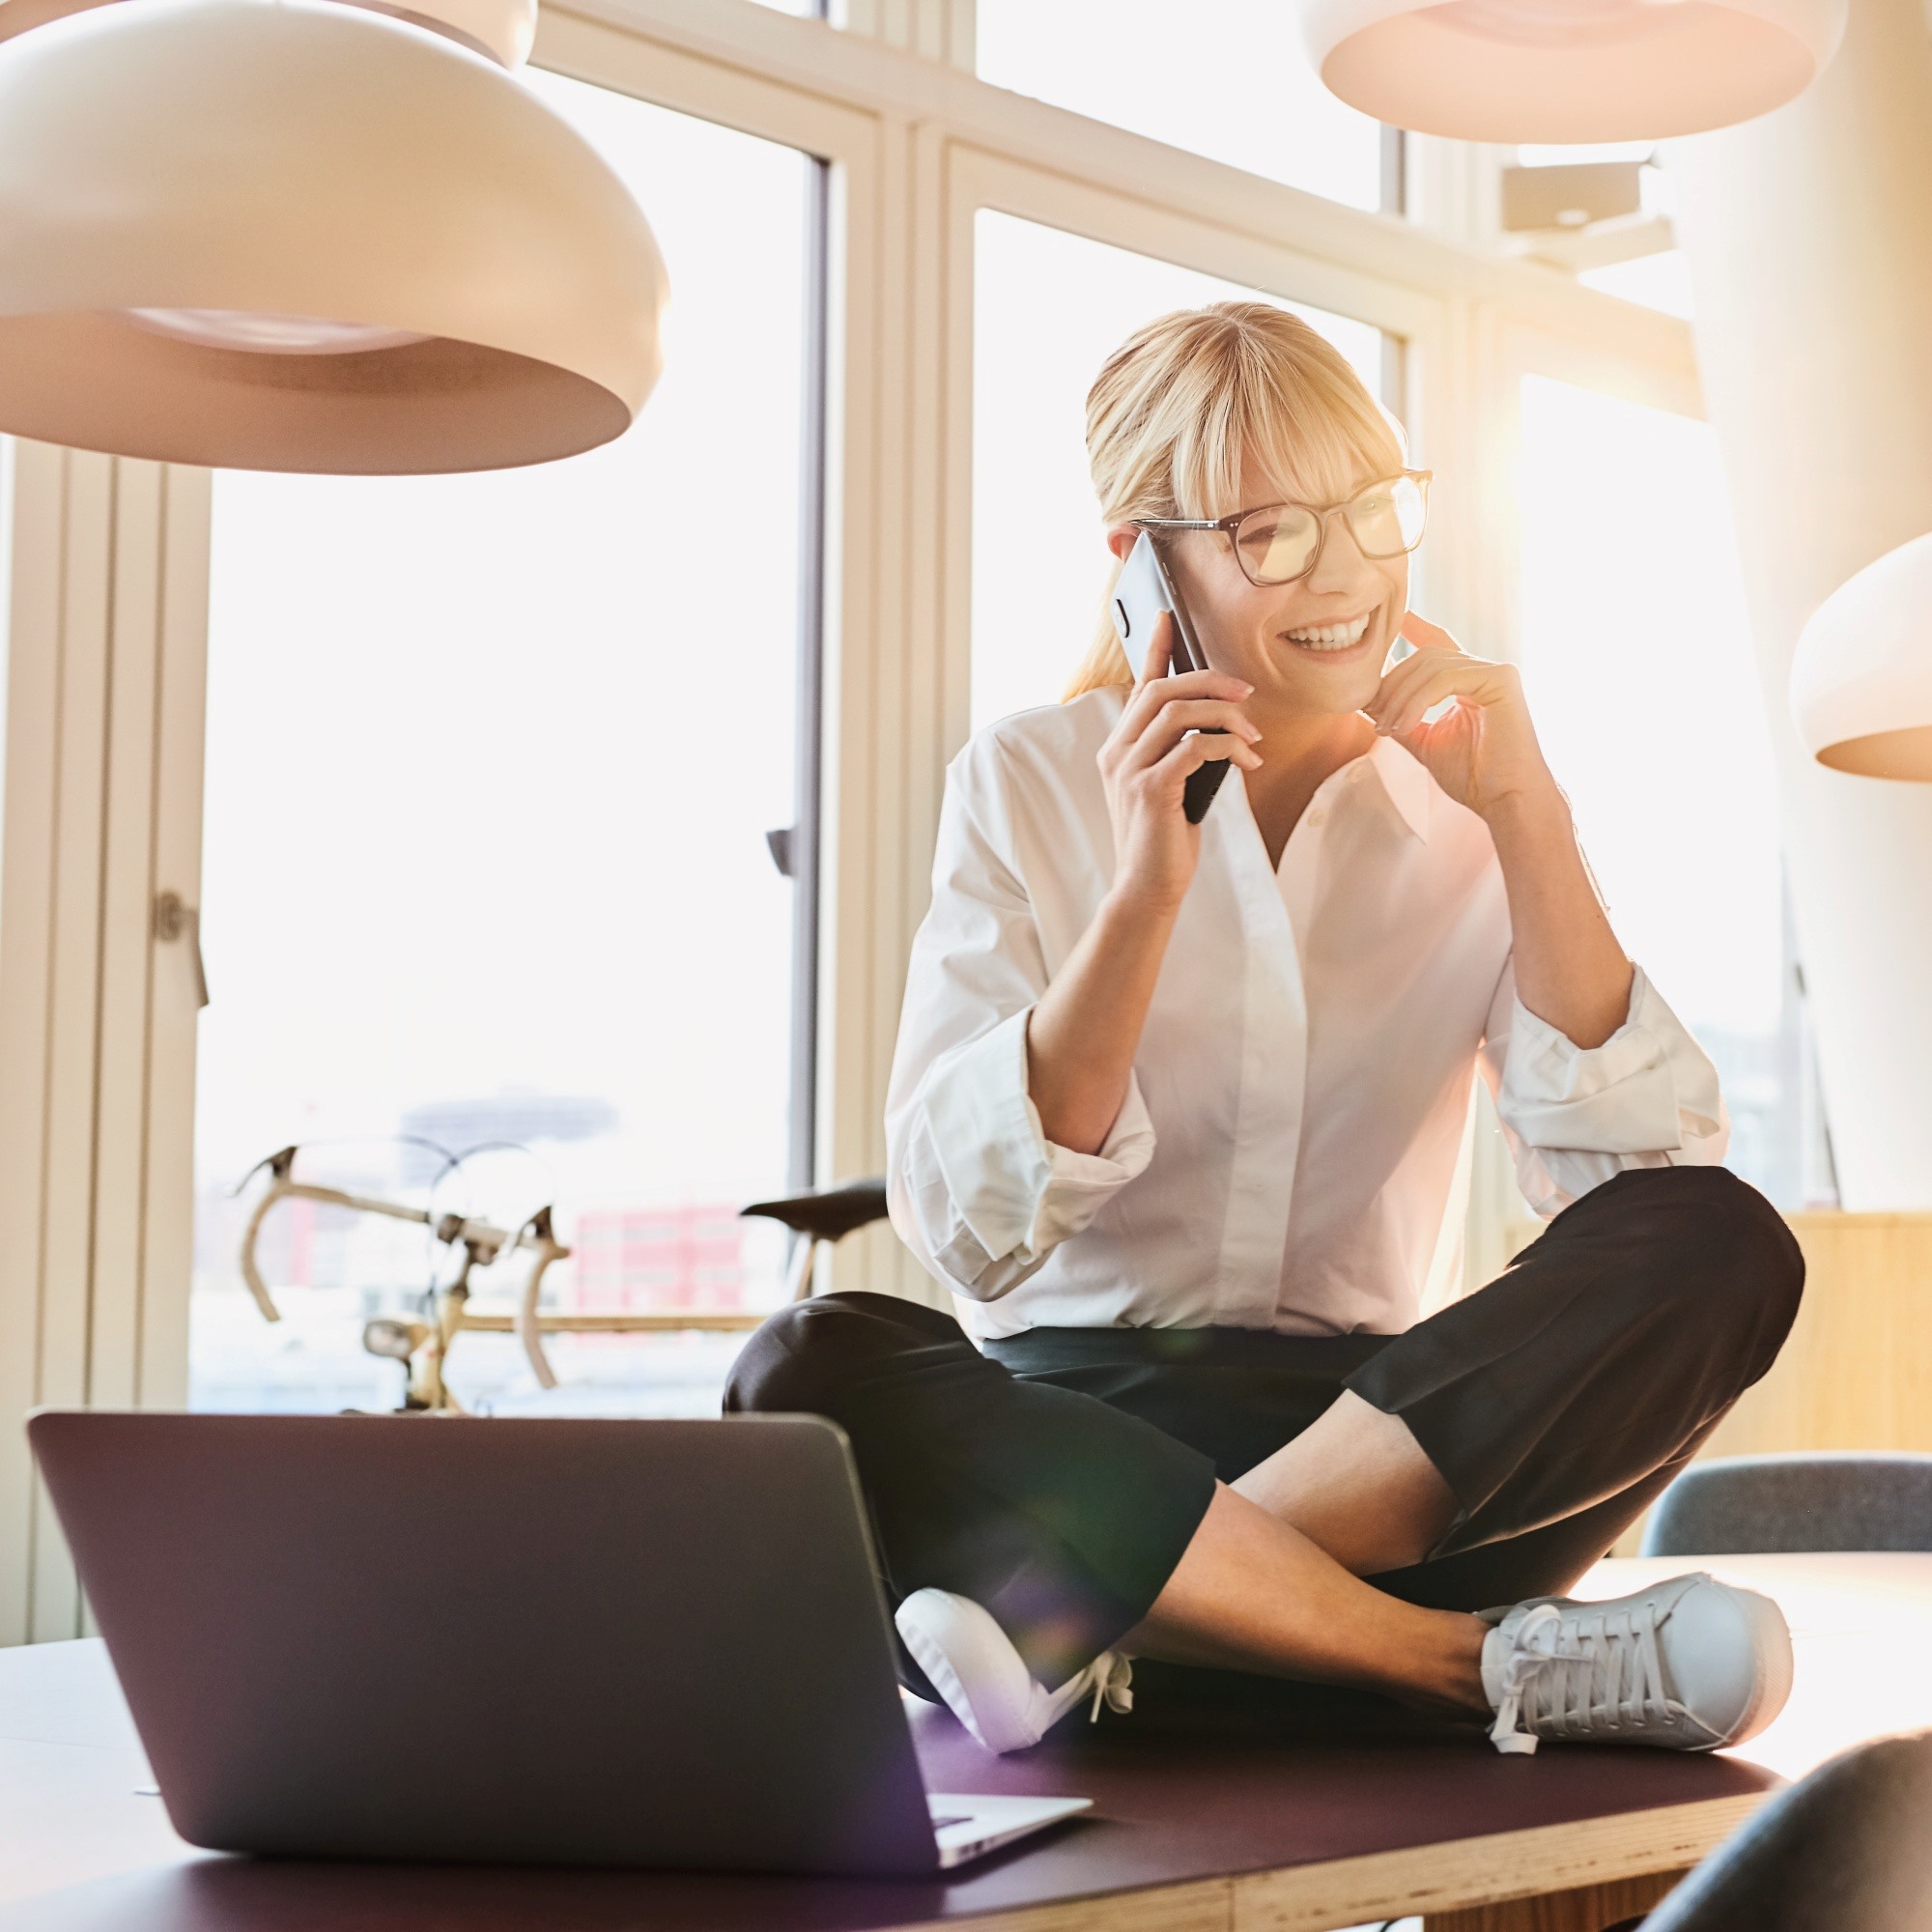 Blonde Frau mit weißer Bluse sitzt im Schneidersitz vor dem Laptop und telefoniert mit Smartphone